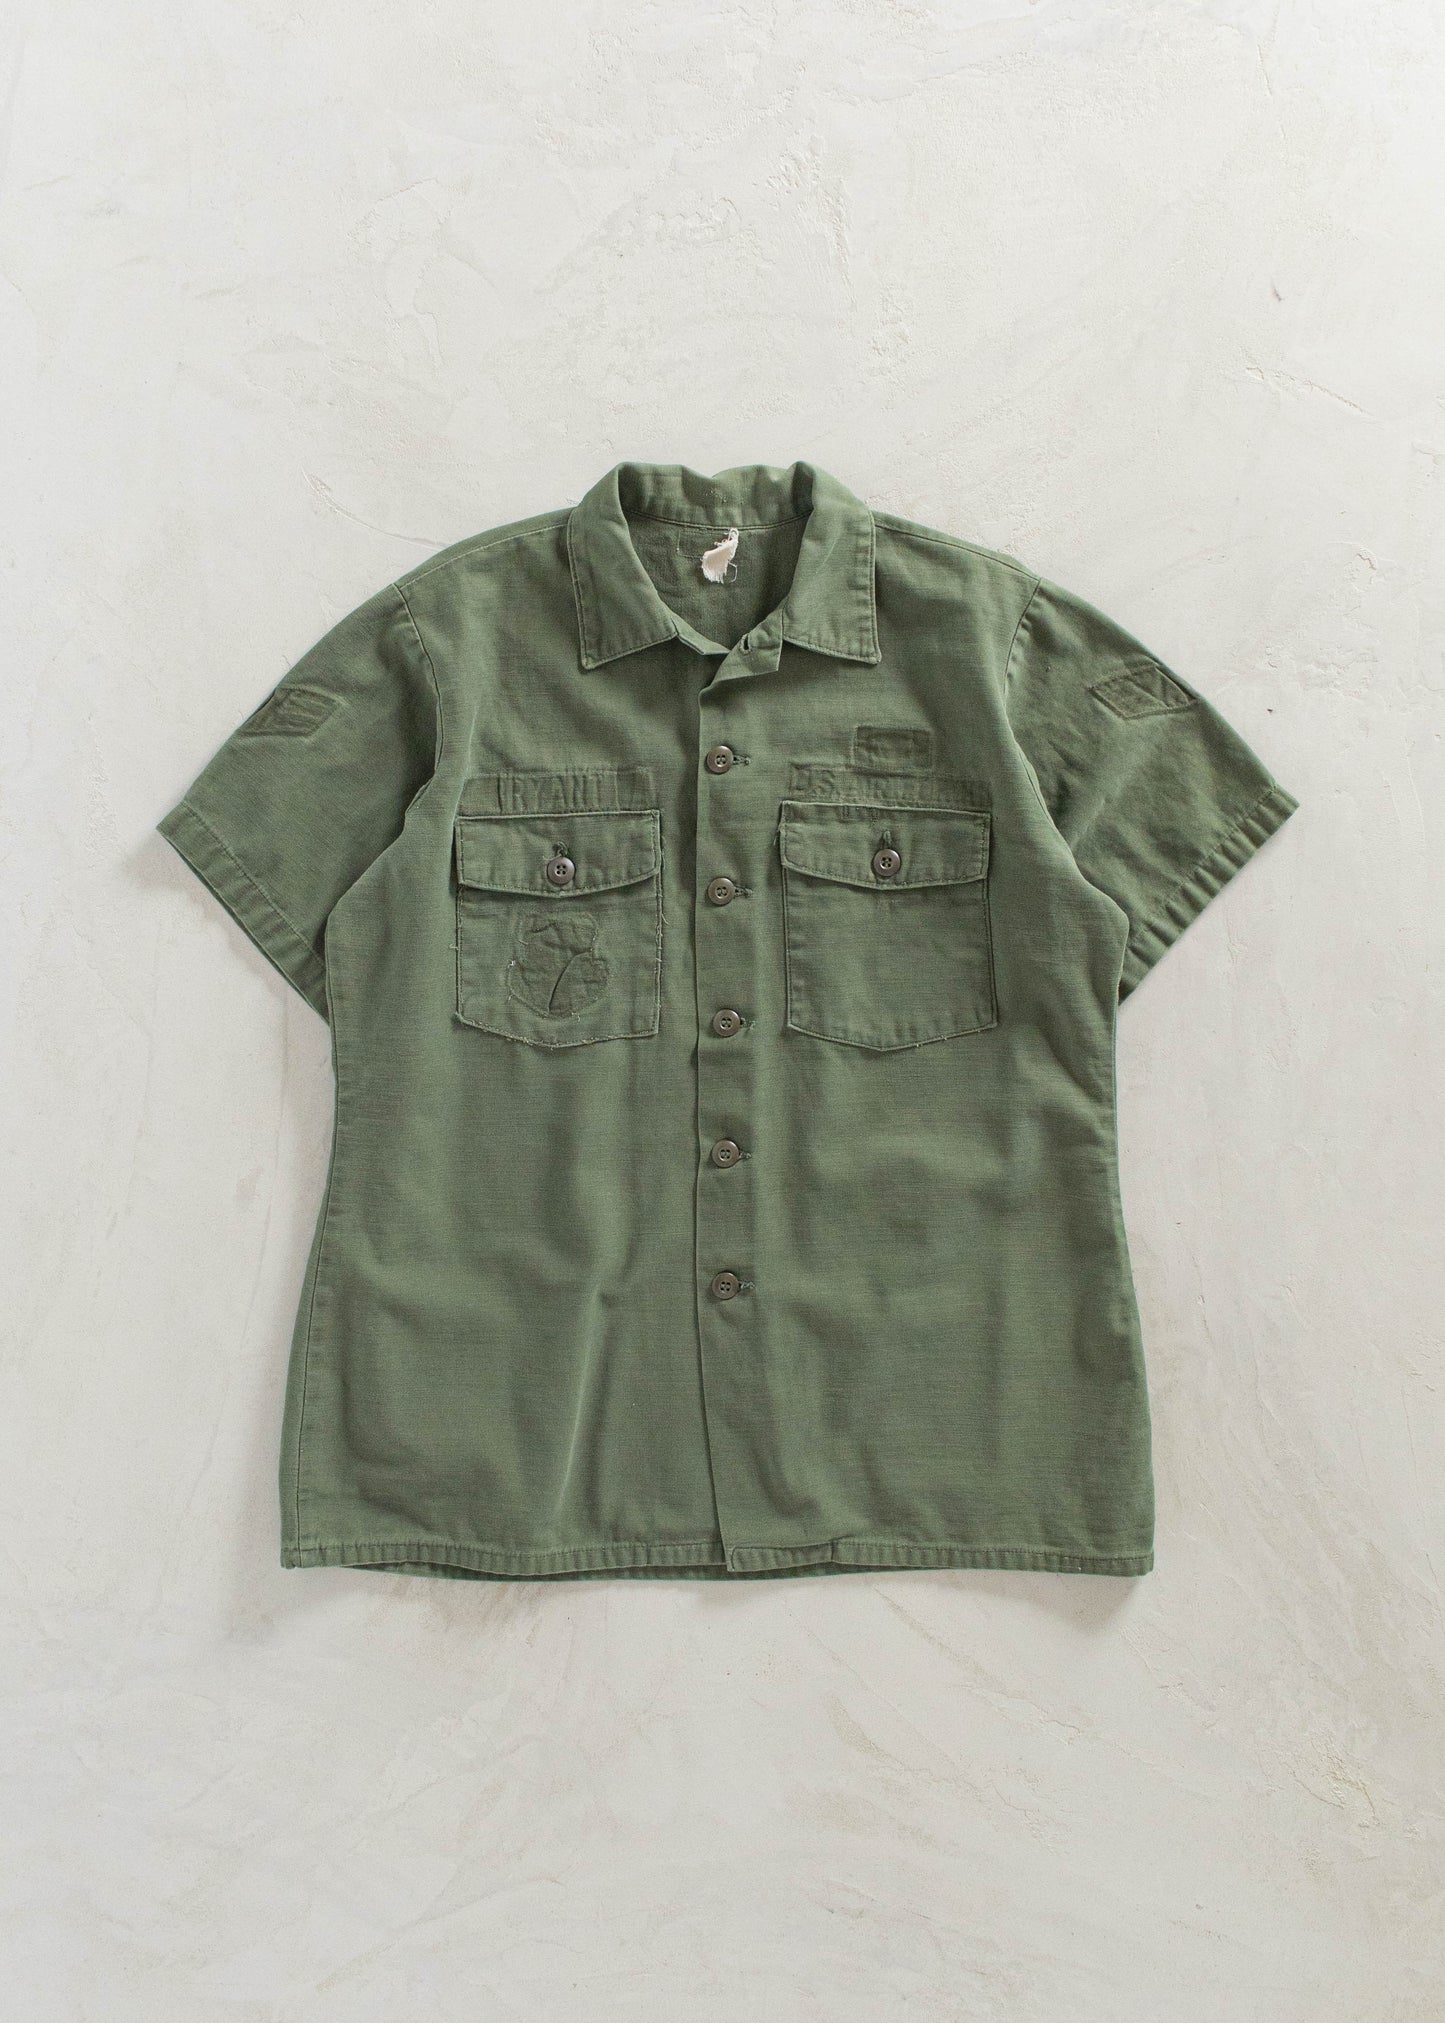 Vintage 1970s OG 107 Short Sleeve Button Up Shirt Size S/M